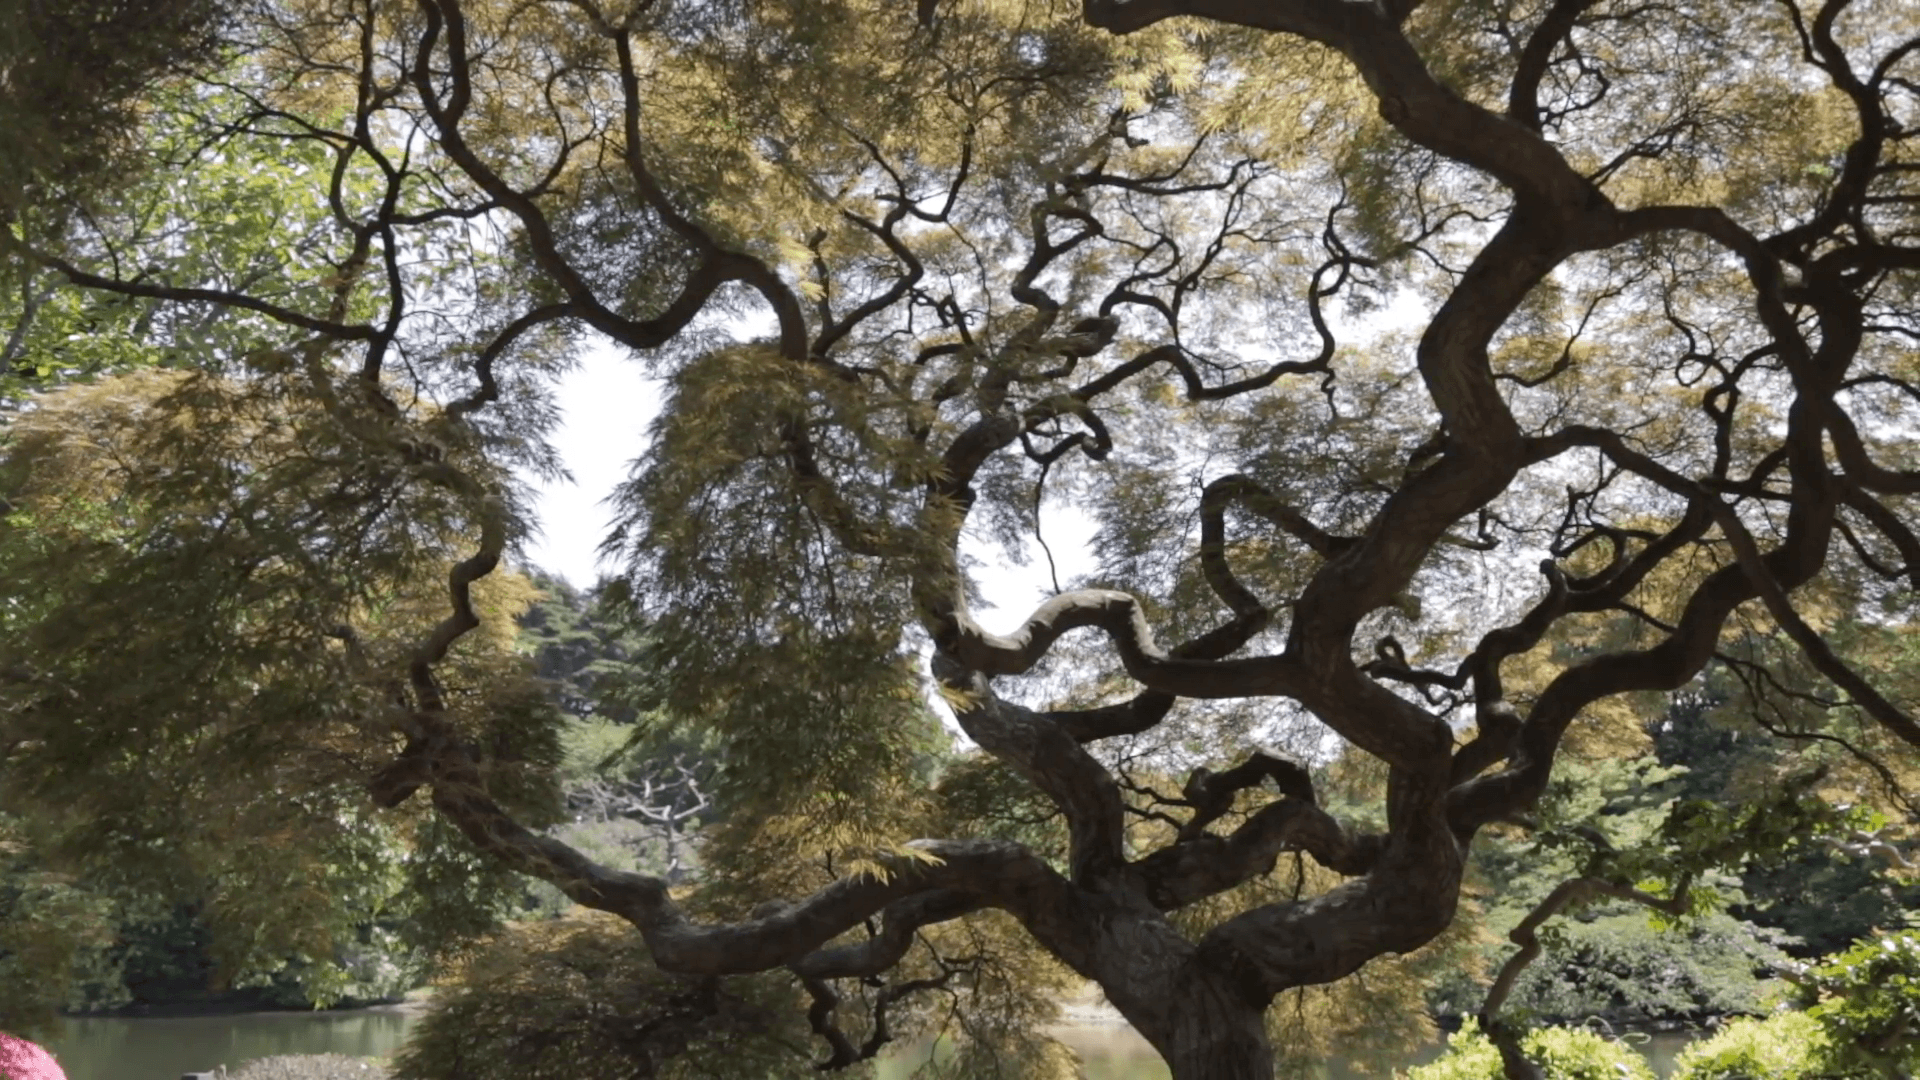 Shinjuku Gyoen National Garden. Large bonsai tree in Shinjuku Gyoen